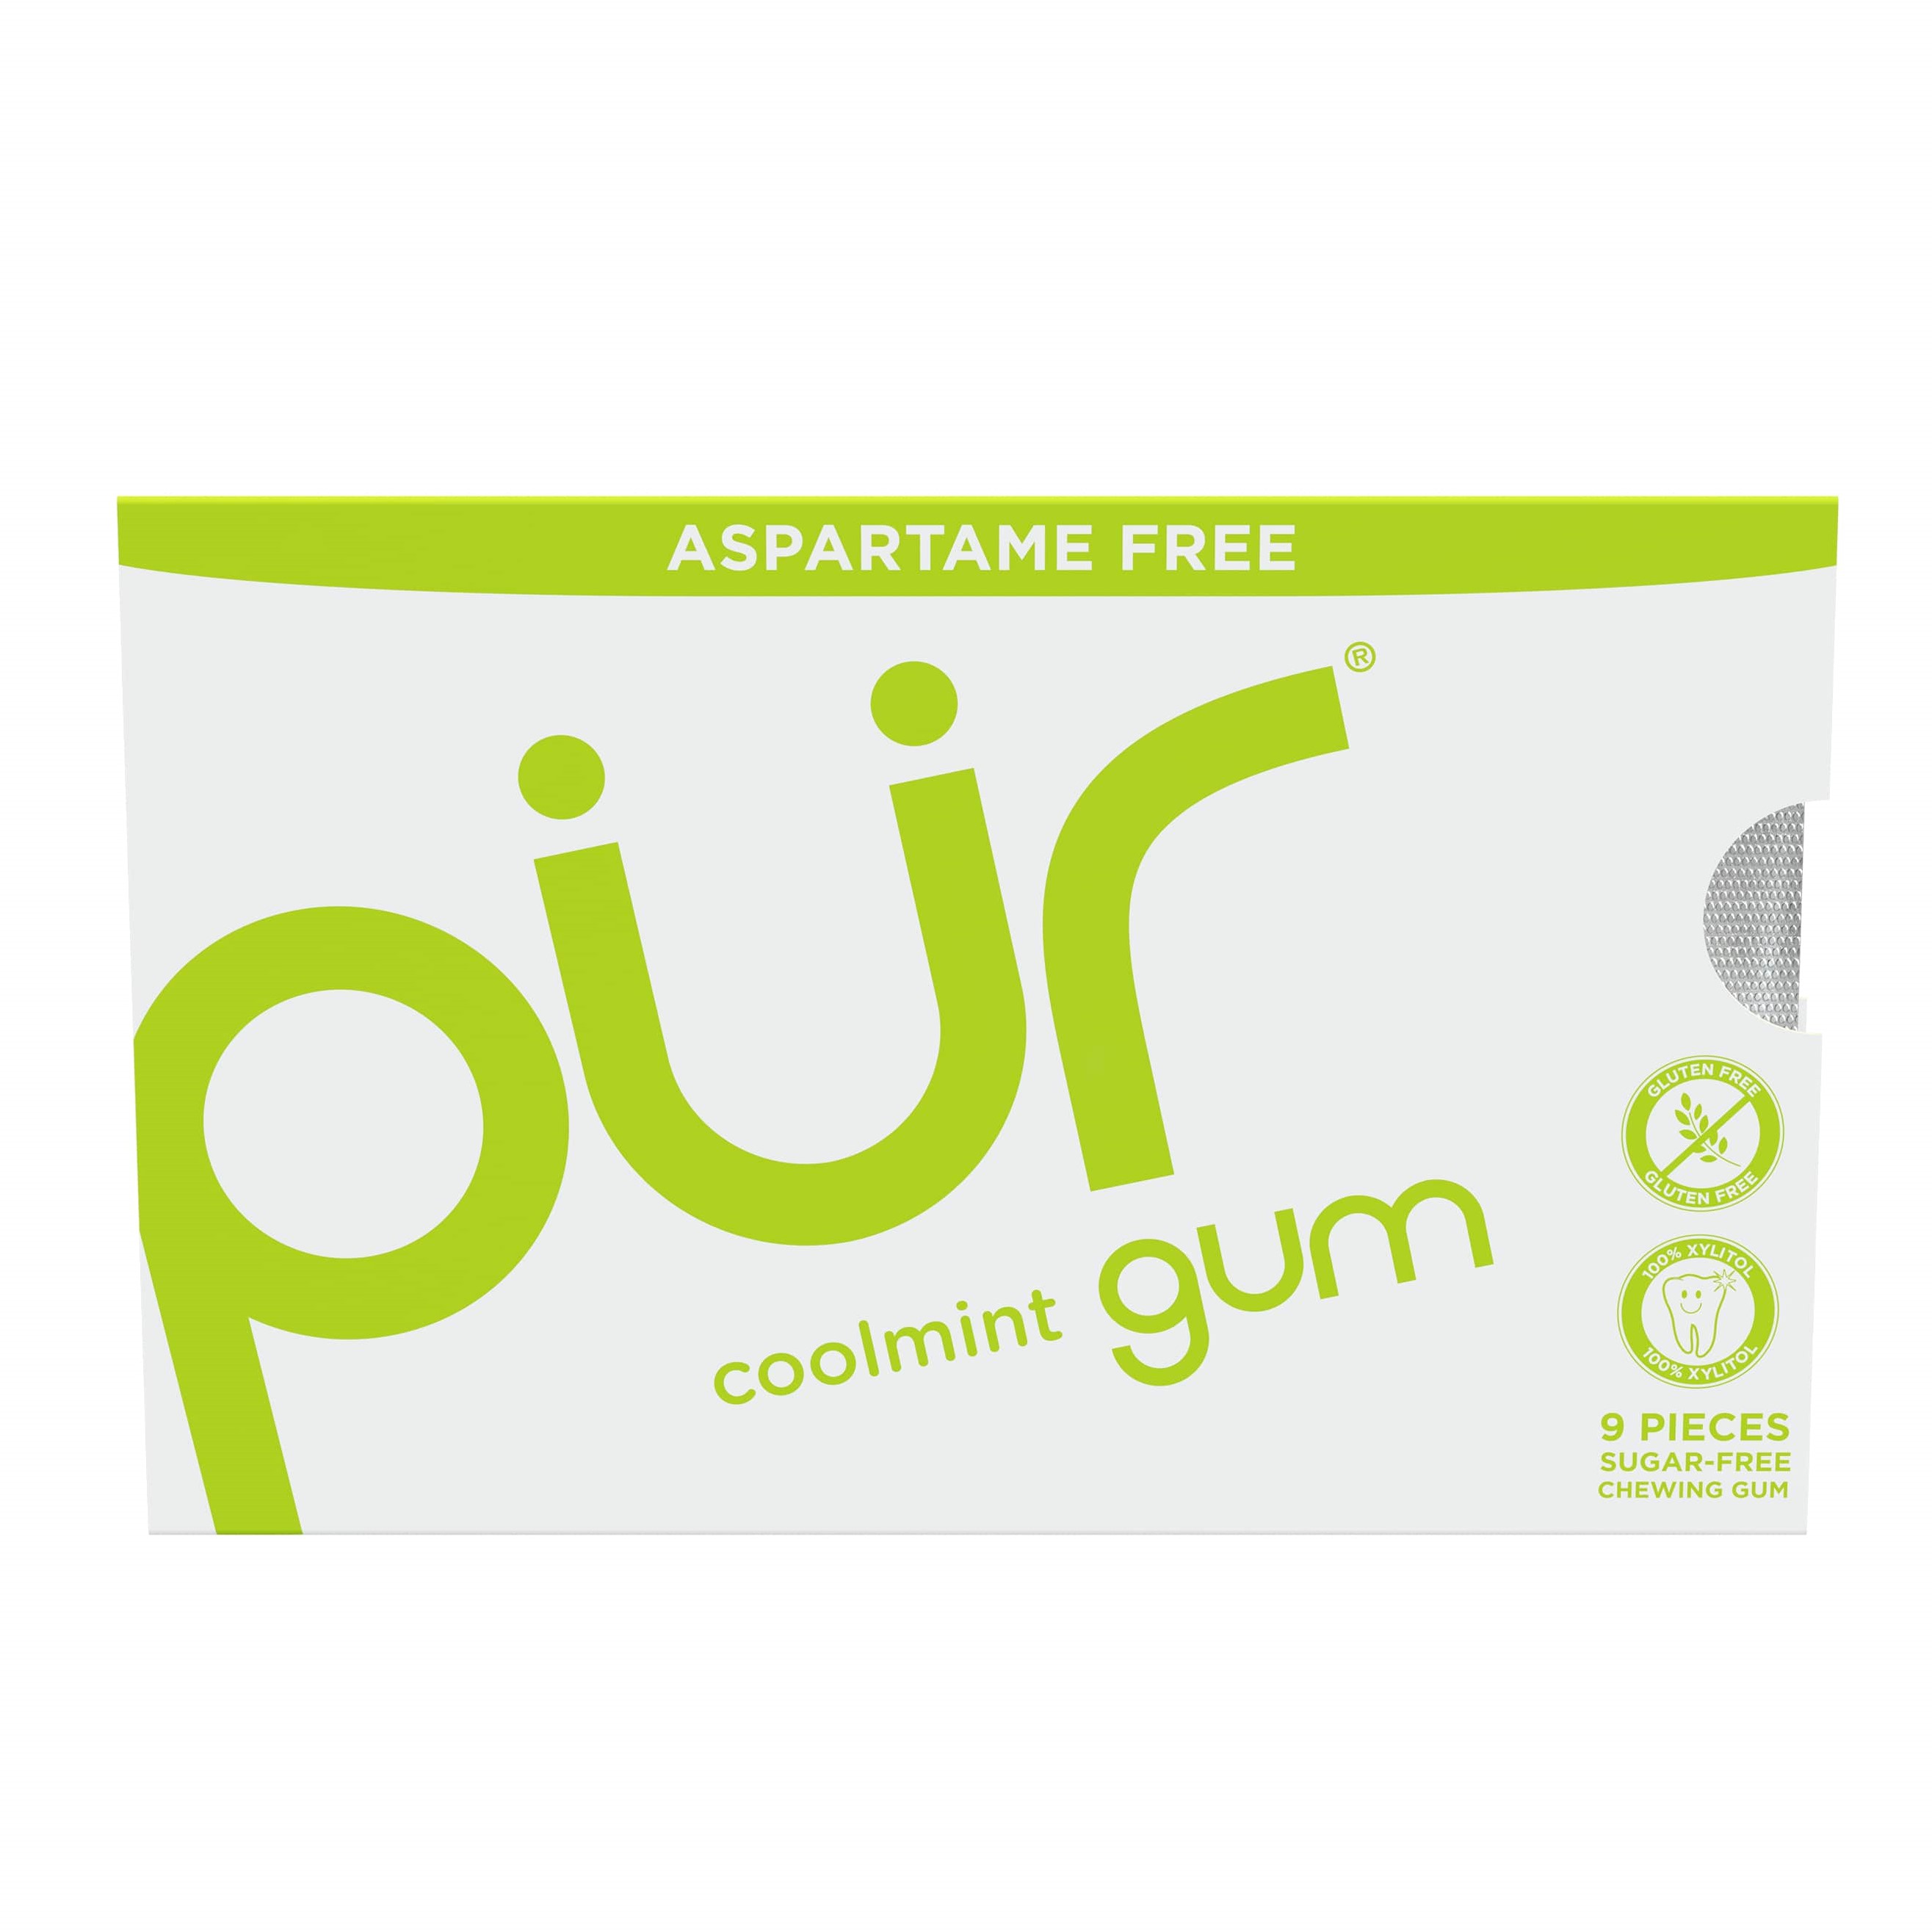 THE PÜR COMPANY Přírodní žvýkačky bez aspartamu a cukru - Coolmint | PÜR Obsah: 55 ks